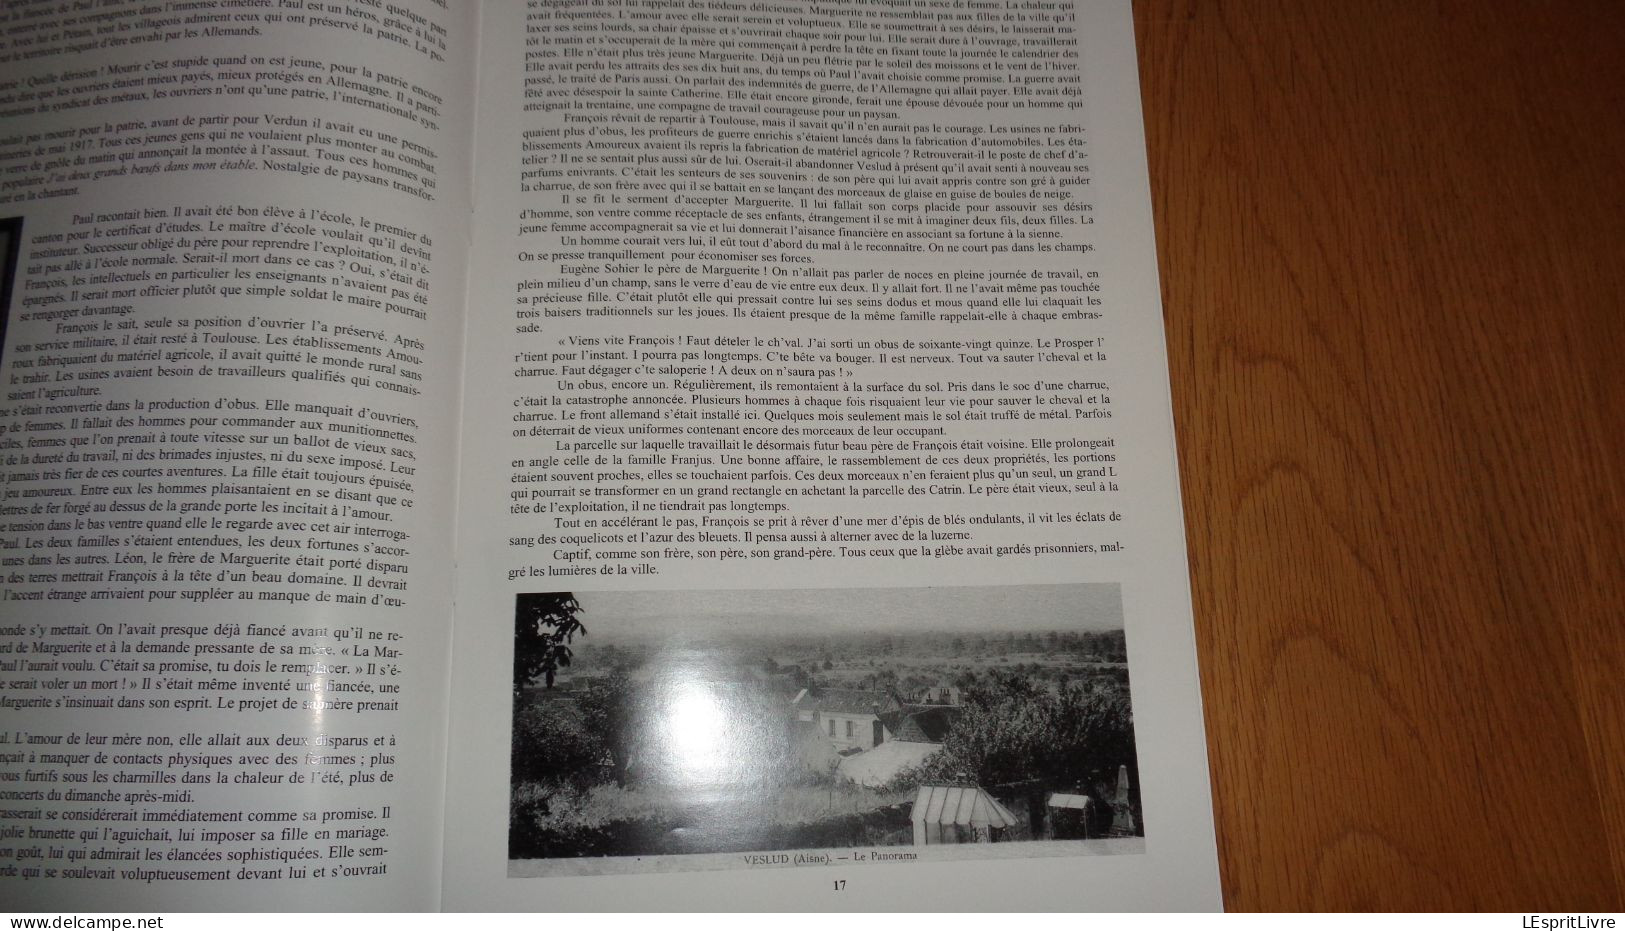 Le Magazine C H A V N° 11 Régionalisme Chavignon Aisne Histoire Guerre 14 18 Hitler à Margival 40 45 V STO Bois Caures